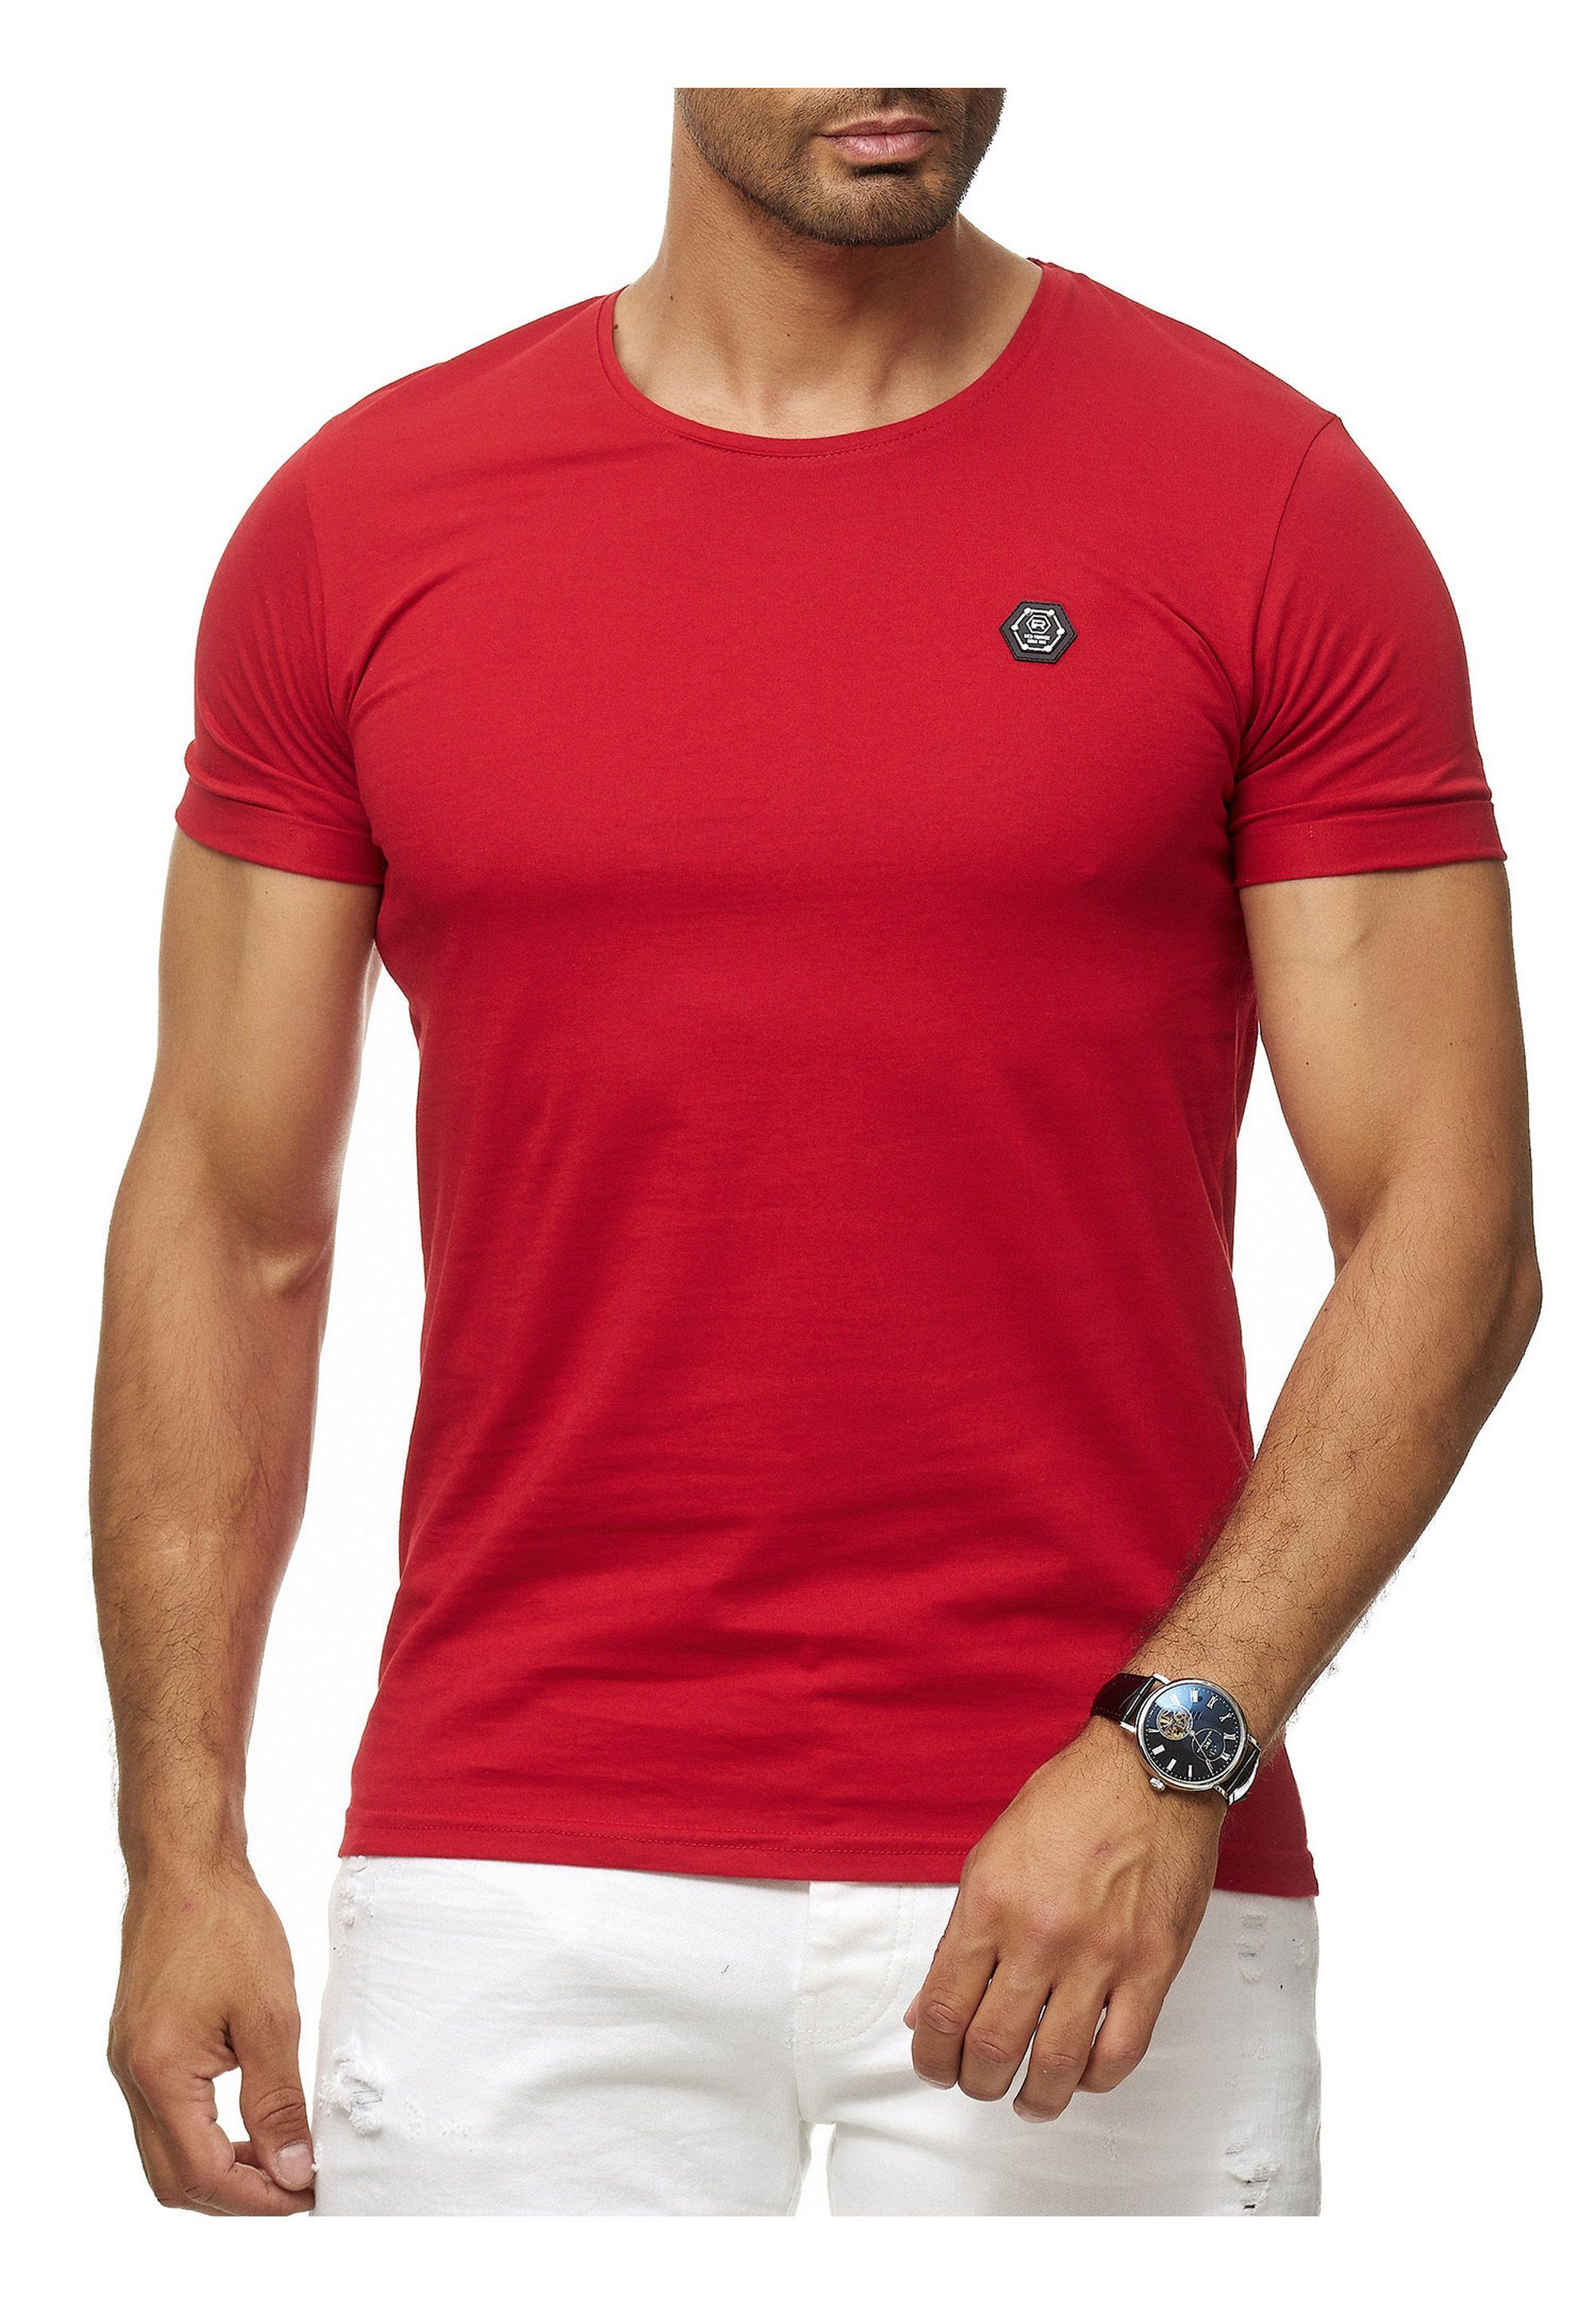 Atlanta sportlichem RedBridge rot mit Brandlogo T-Shirt